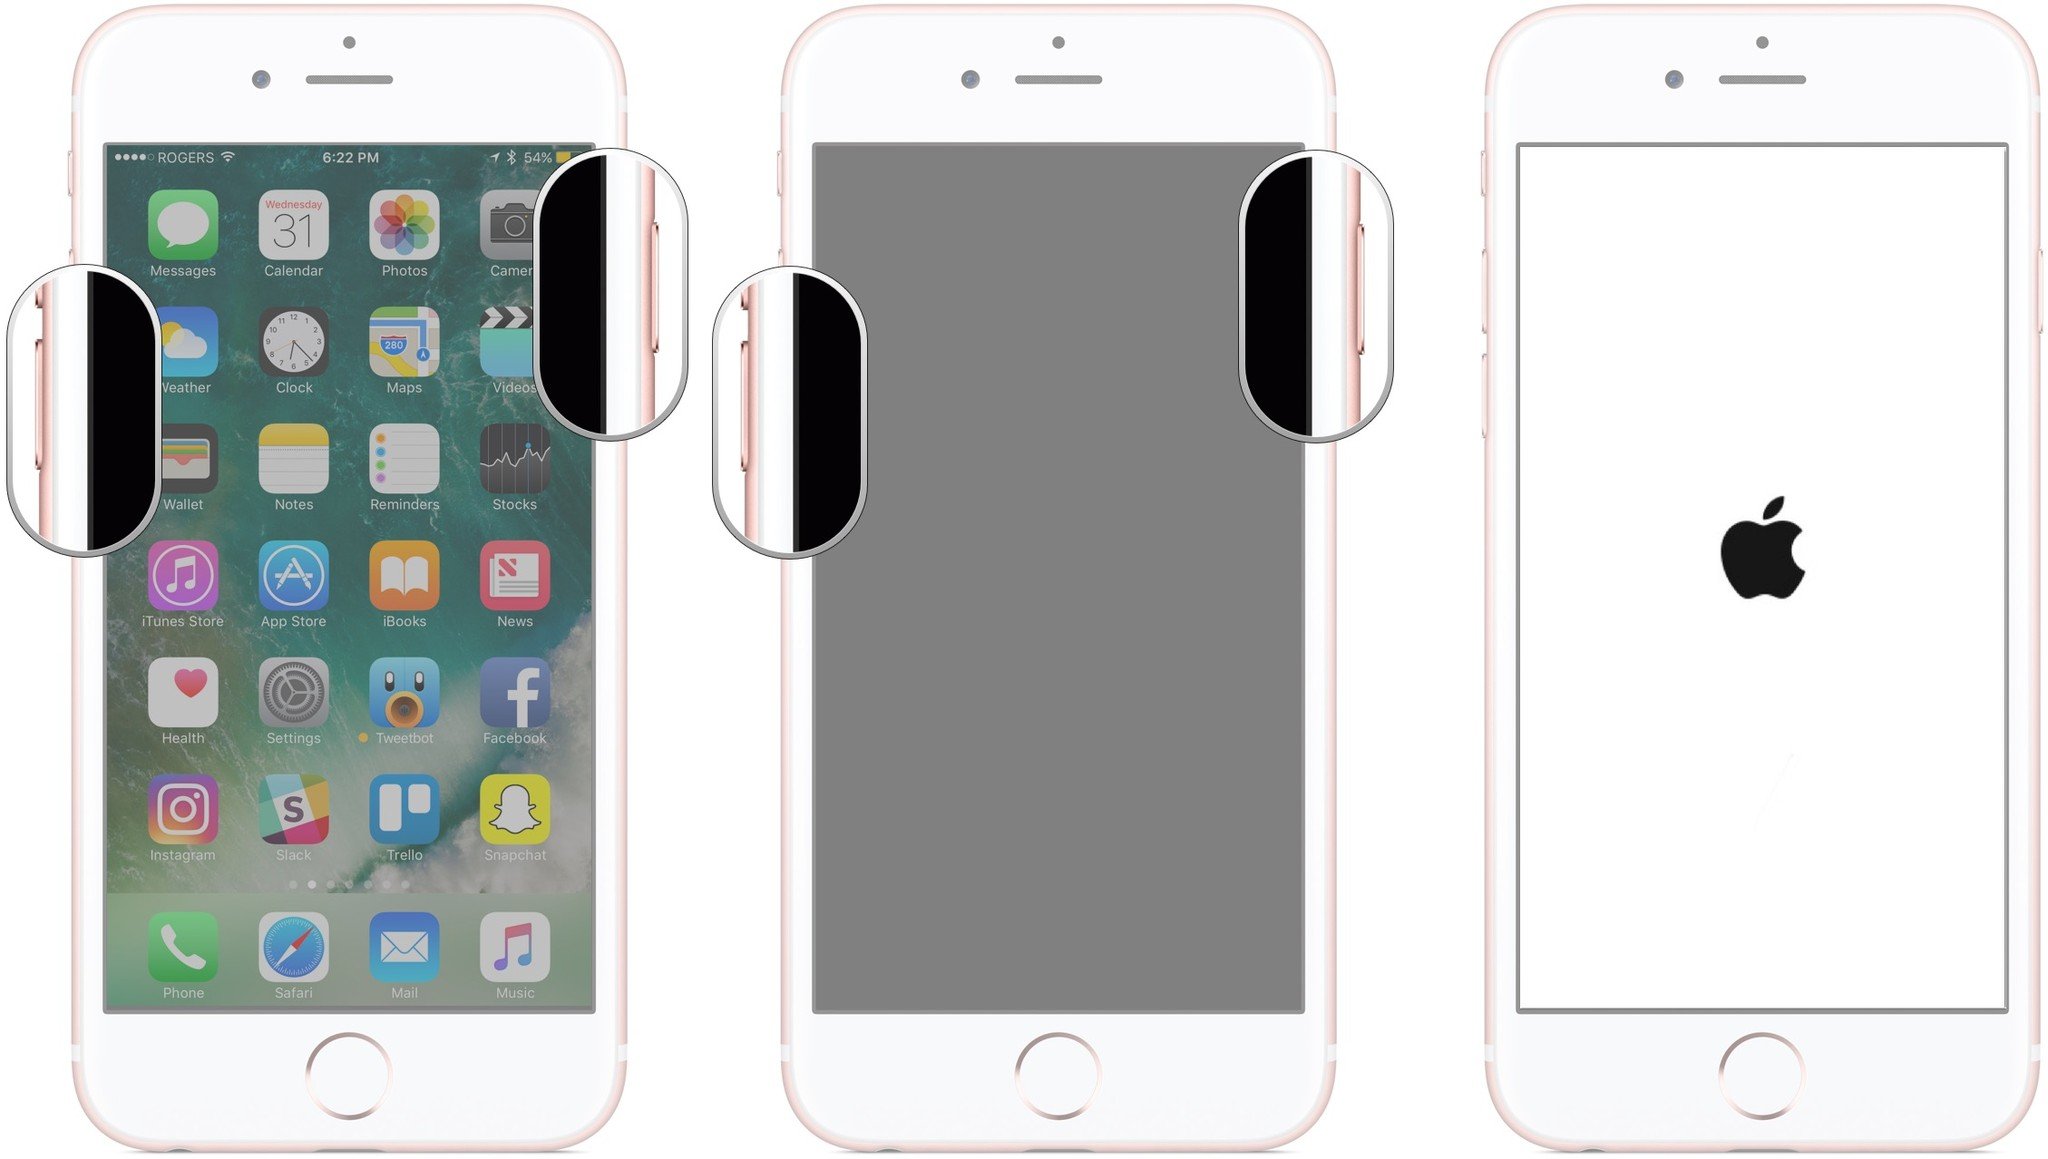 Zurücksetzen des iPhone 7: Halten Sie die Ein-/Aus-Taste gedrückt, halten Sie die Ein-/Aus-Taste weiterhin gedrückt und halten Sie die Leiser-Taste gedrückt.